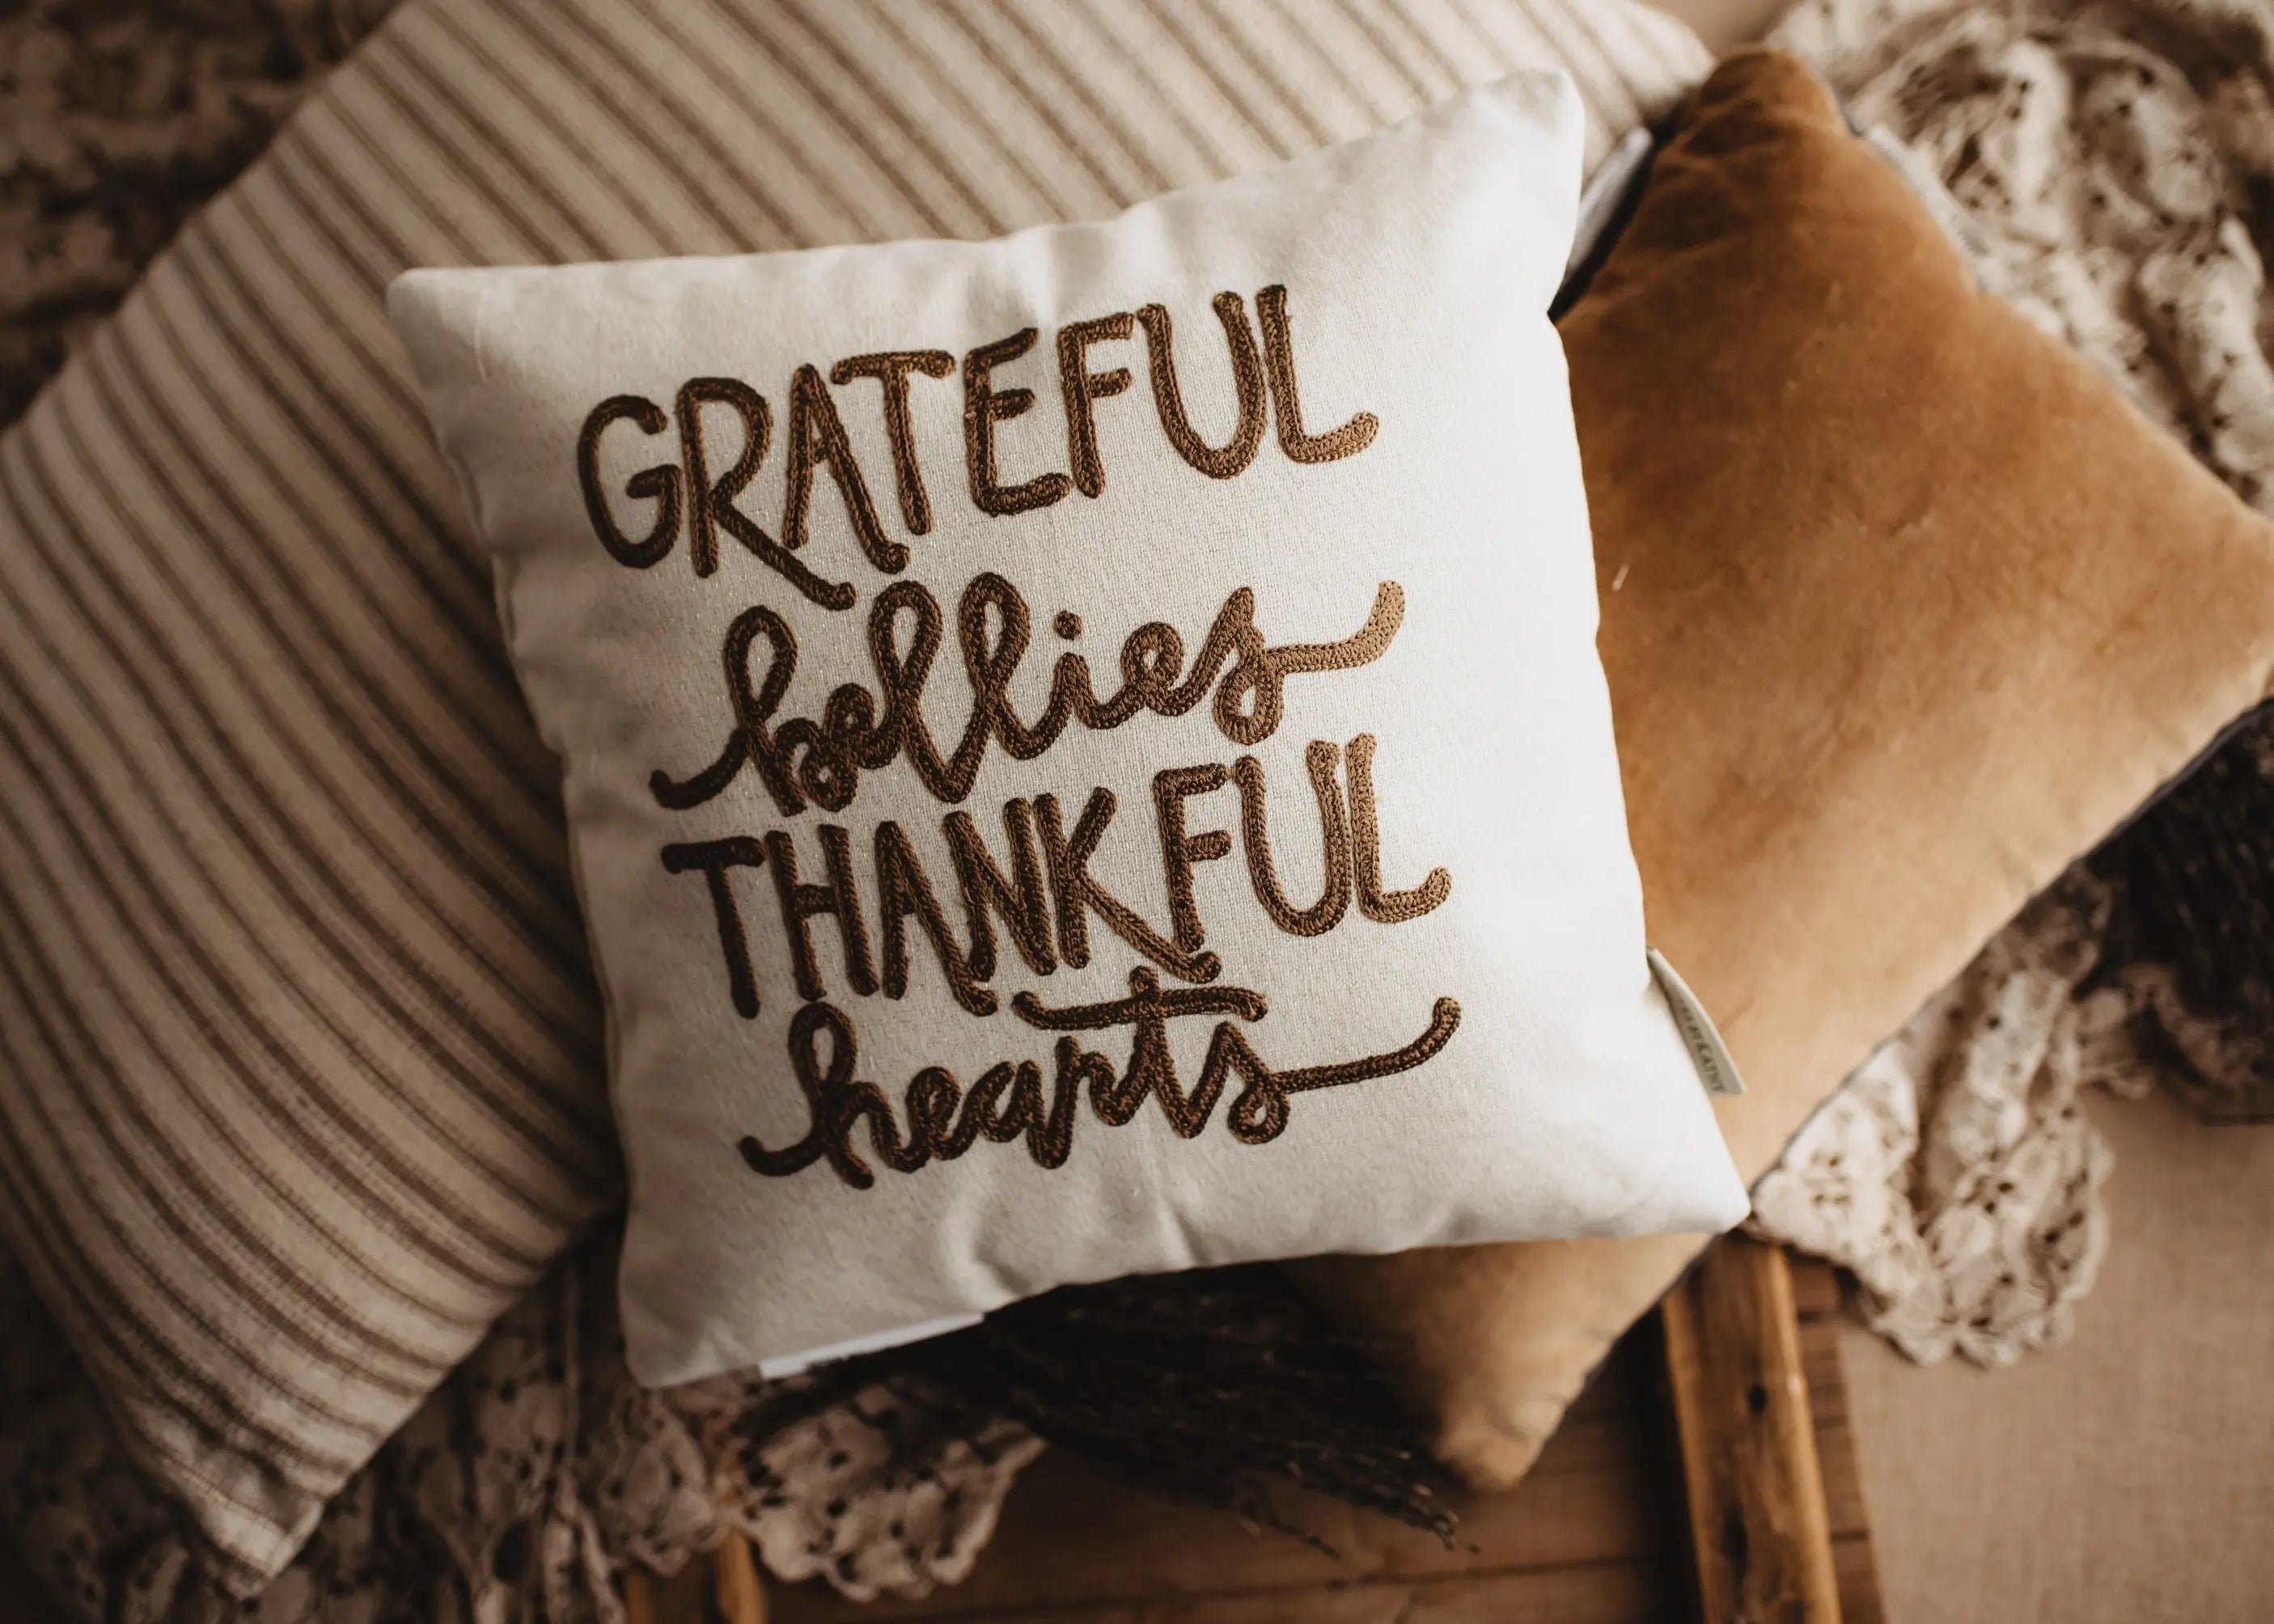 https://uniikpillows.com/cdn/shop/products/Grateful-Bellies-Thankful-Hearts-Pillow---Throw-Pillow-Thanksgiving-Decor---Fall-Decor---Room-Decor---Decorative-Pillow---Gift-for-her-UniikPillows-1680289559.jpg?v=1680289575